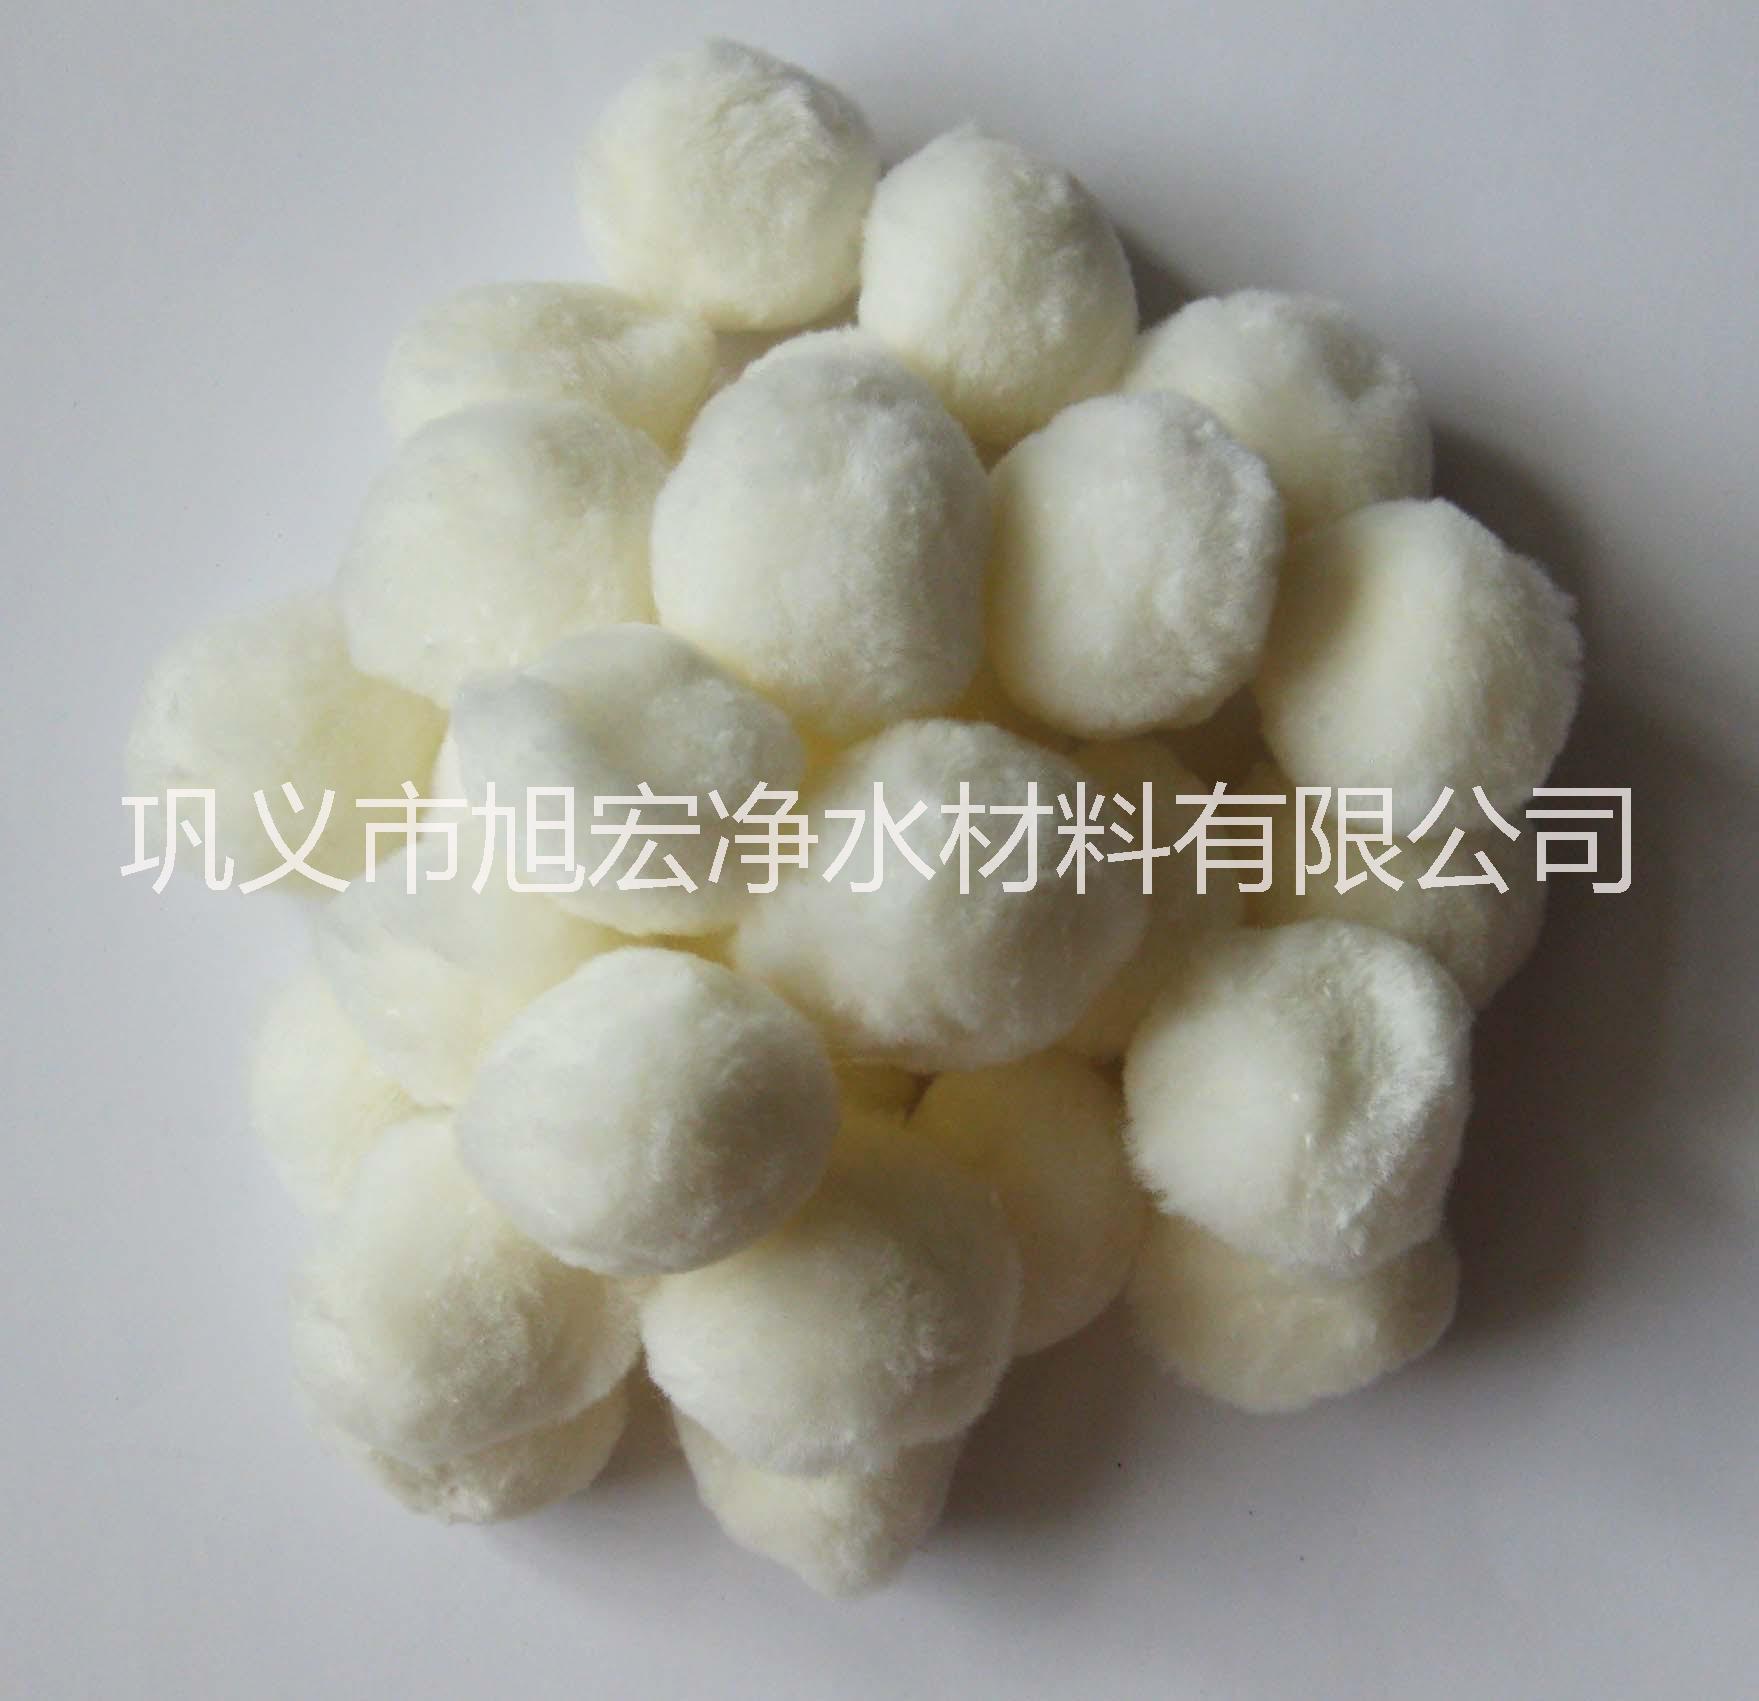 郑州市湖北纯白纤维球滤料厂家有哪些?厂家湖北纯白纤维球滤料厂家有哪些?